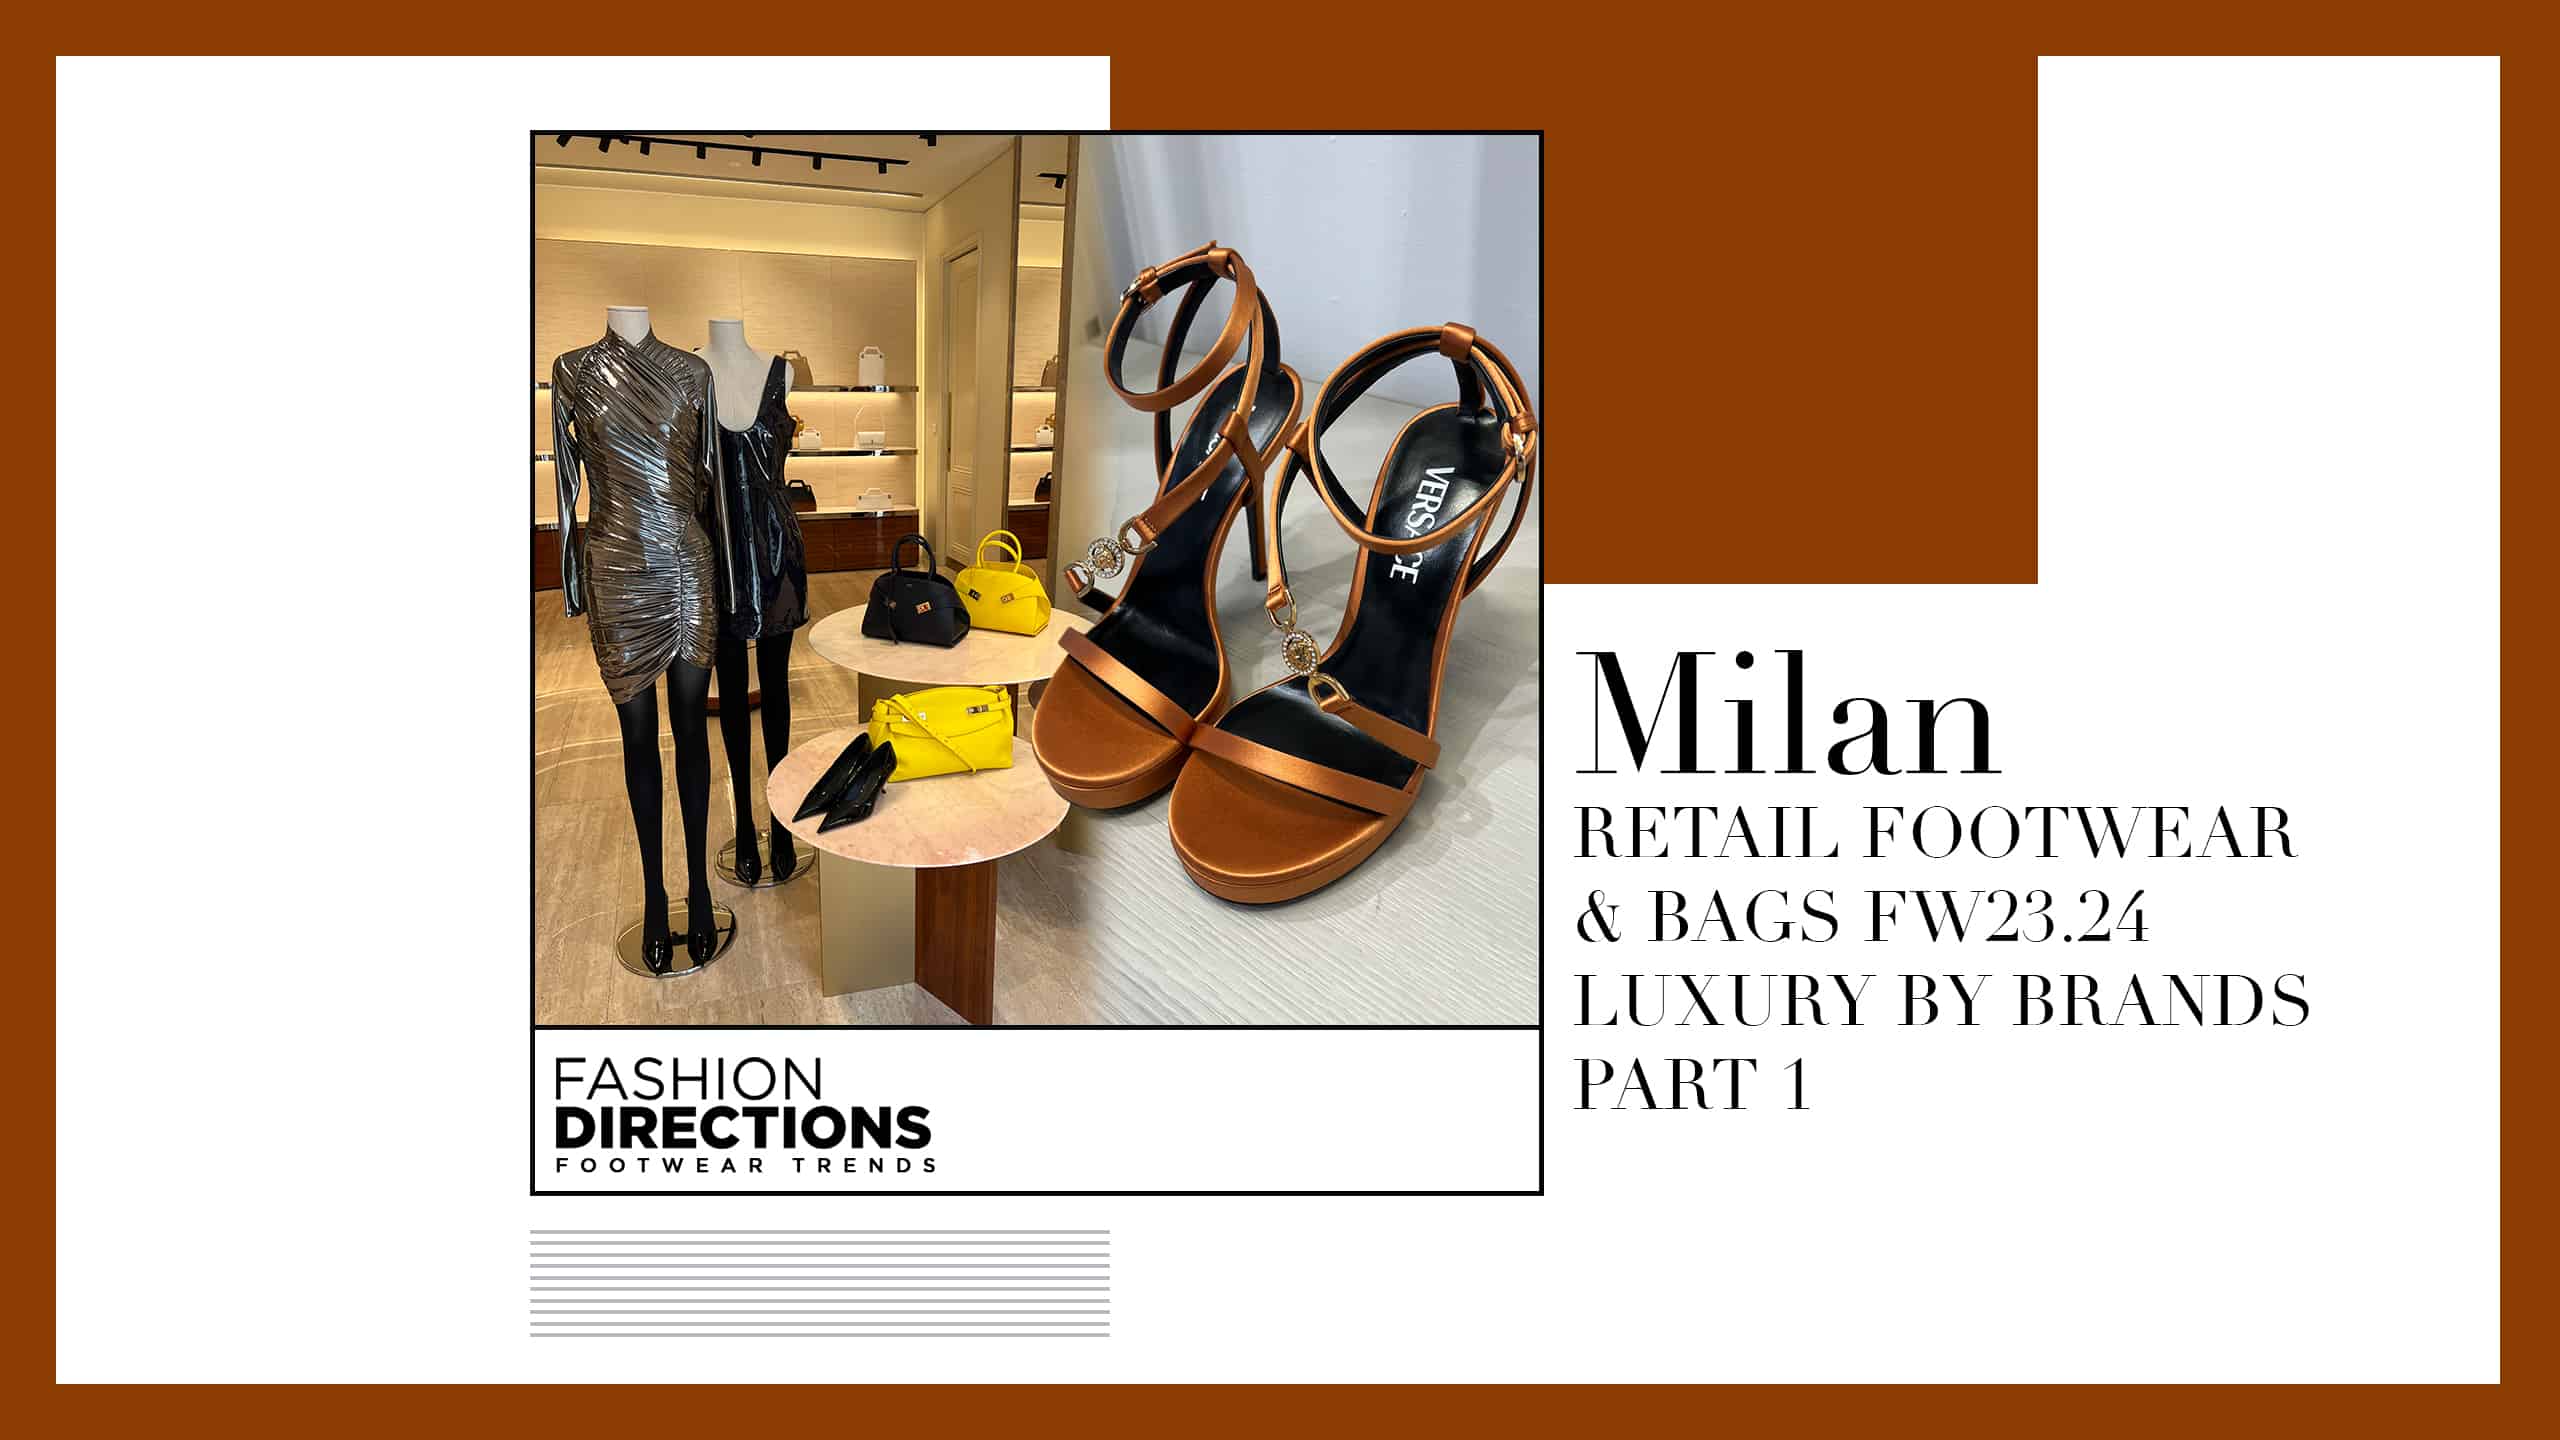 Milan Retail Footwear Bags fw23.24 Luxury By Brands Part 1